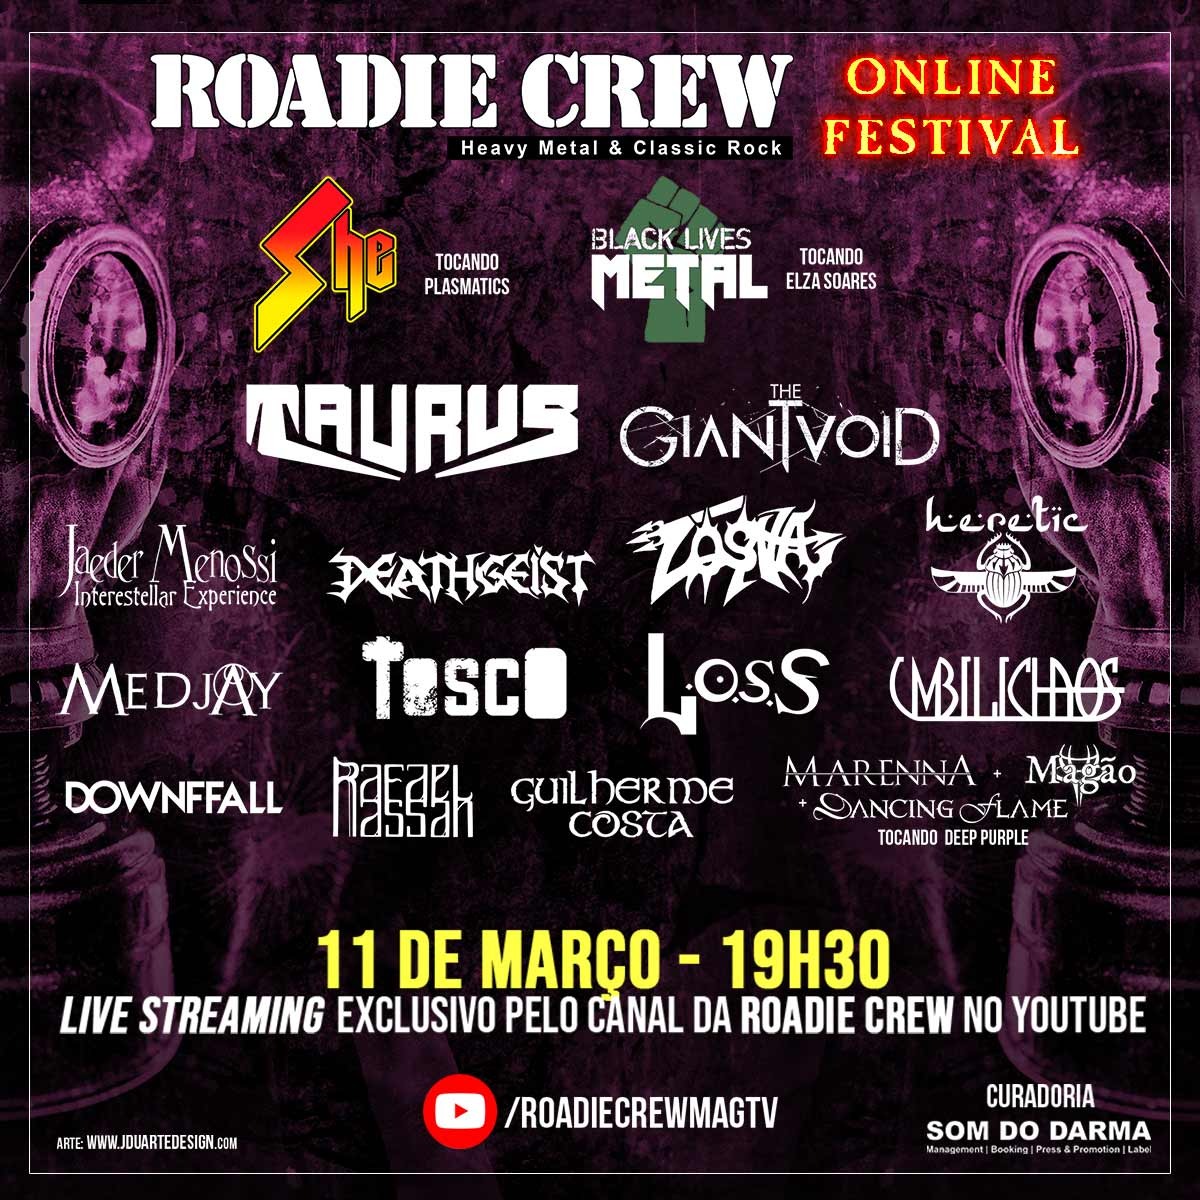 Roadie Crew - Online Festival 24 _Feed